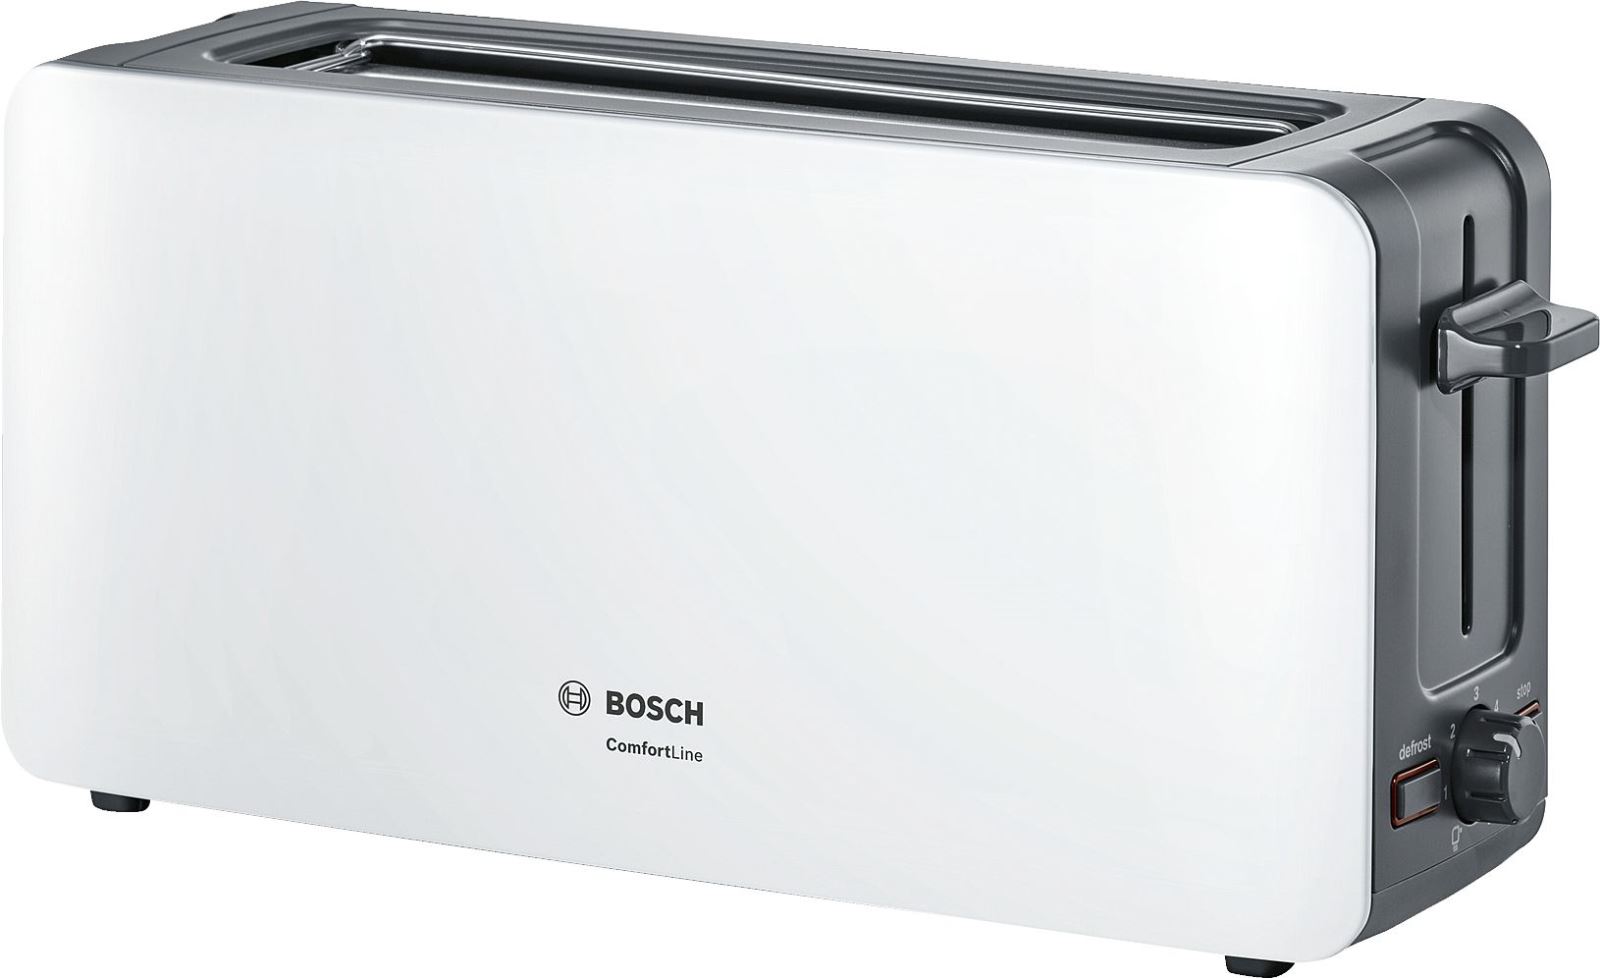 Prajitor de paine Bosch ComfortLine TAT6A001, 1090 W, fanta lunga, 2 felii, reglaj electronic, suport chifle integrat, Alb/gri